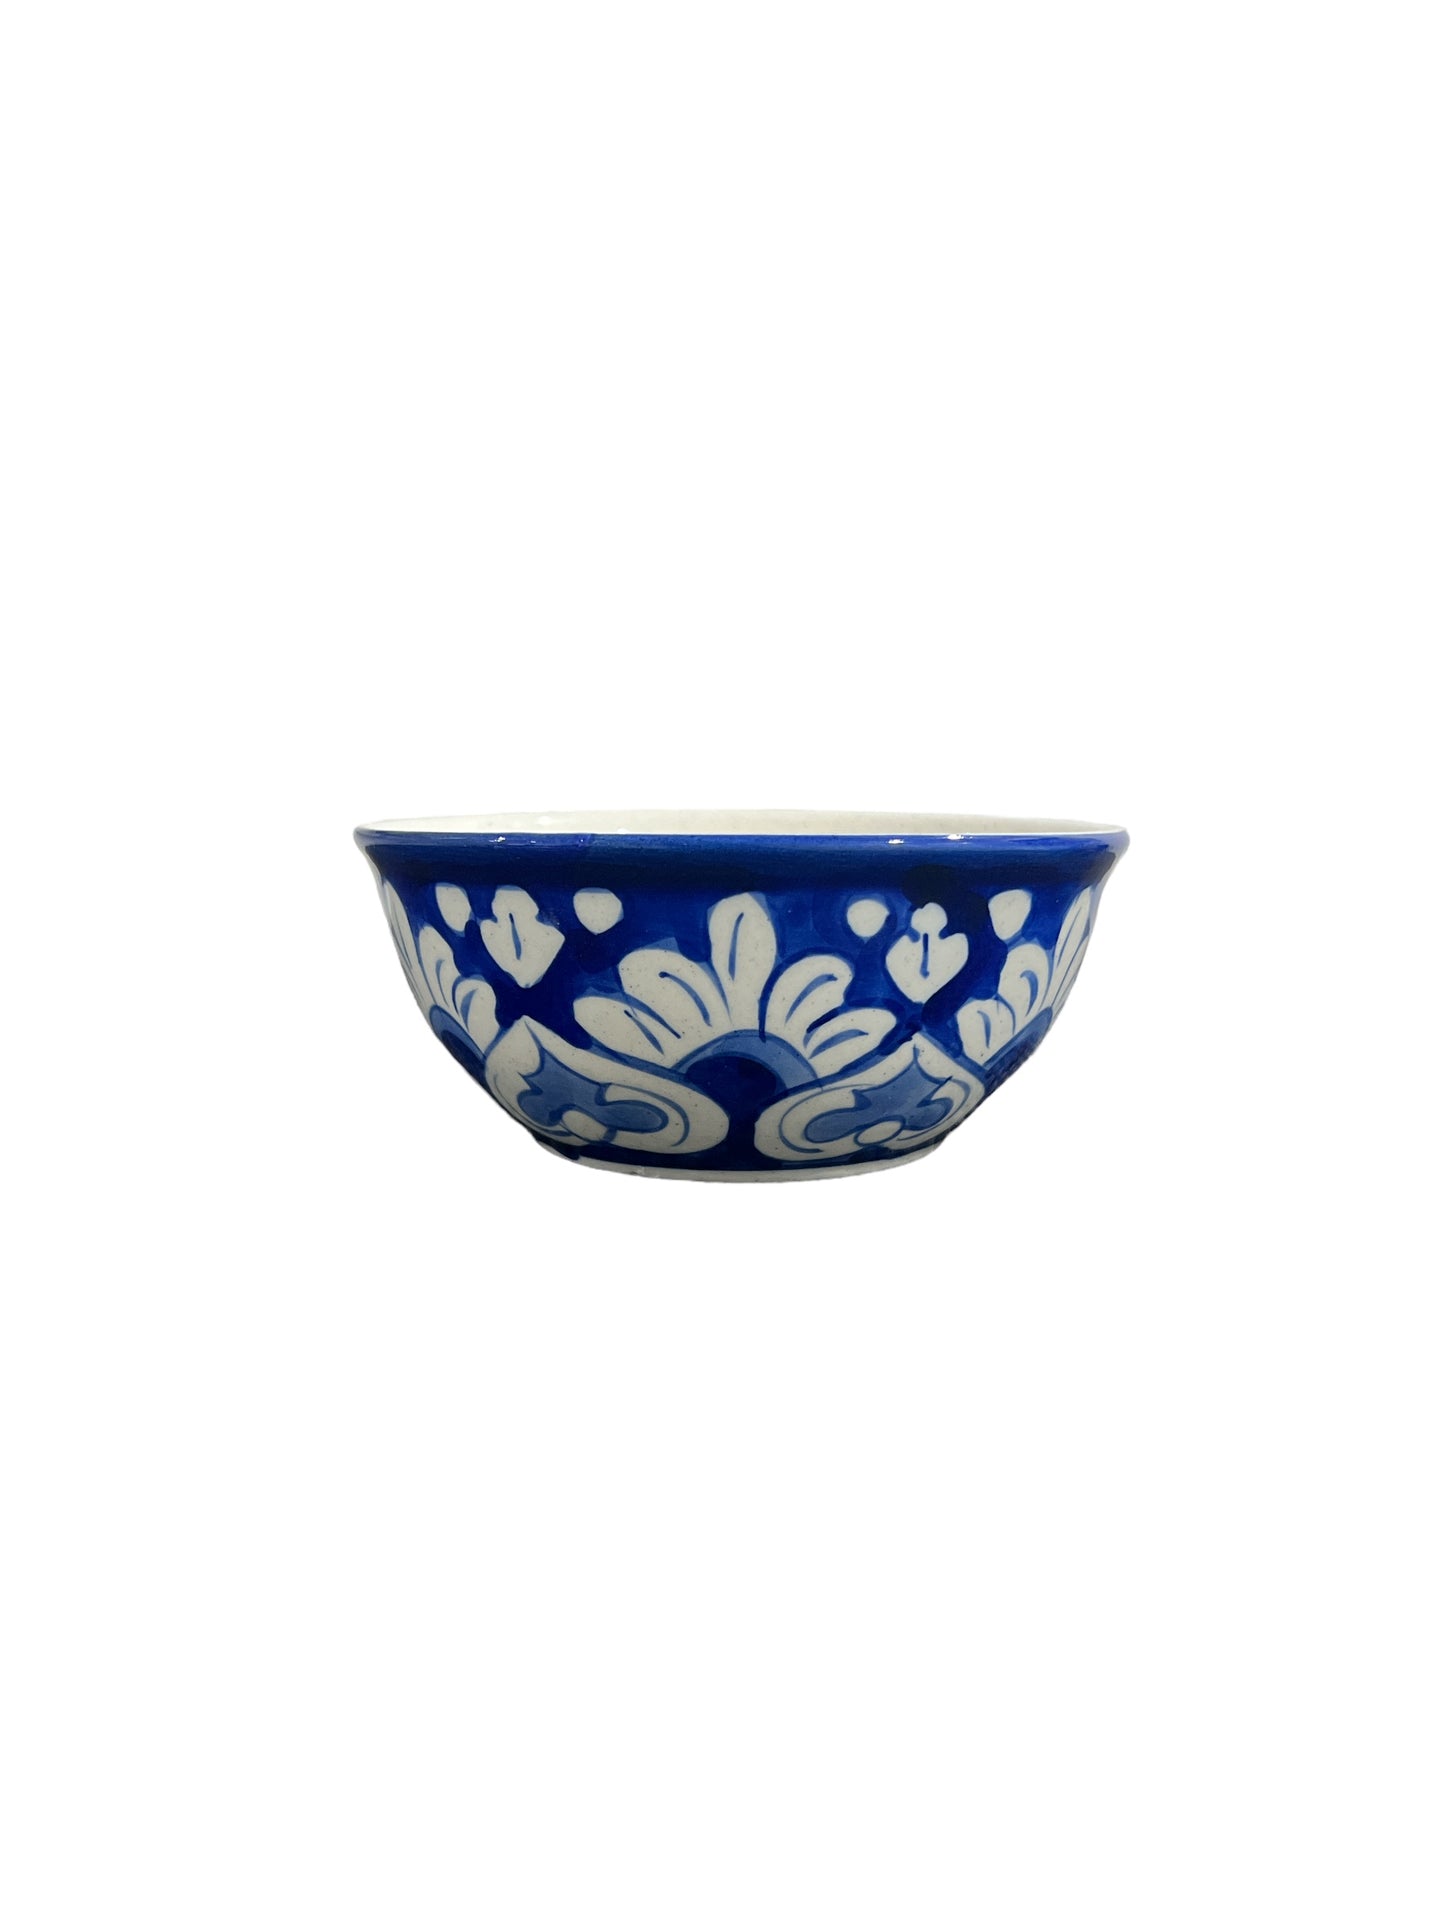 Blue Pottery Serving Bowl - White Leaf Design (Set of 2)